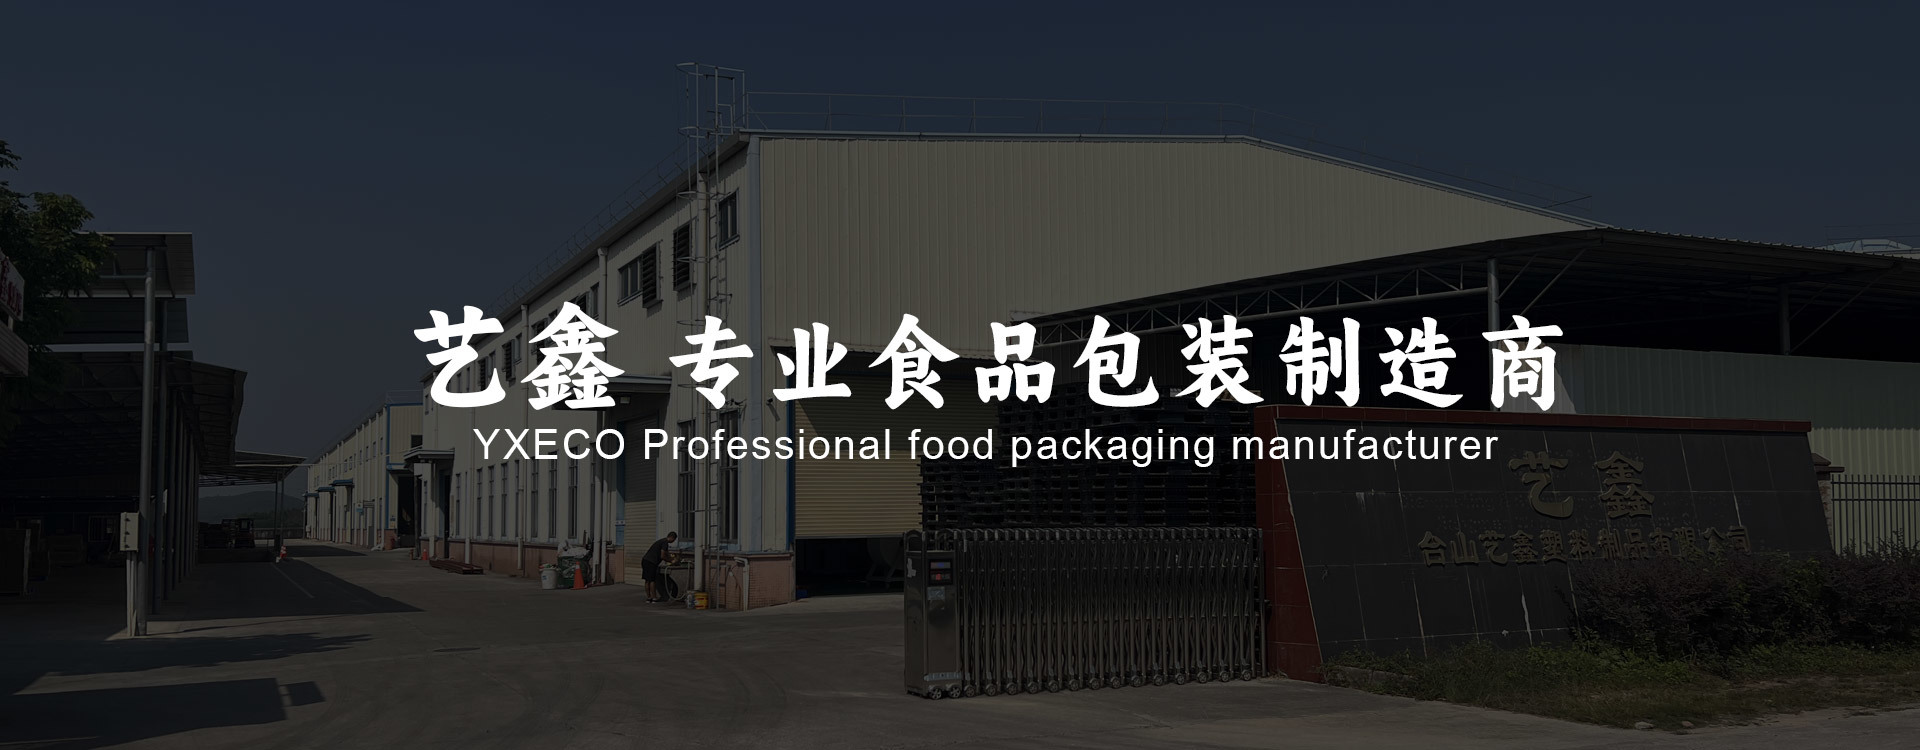 艺鑫 专业食品包装制造商